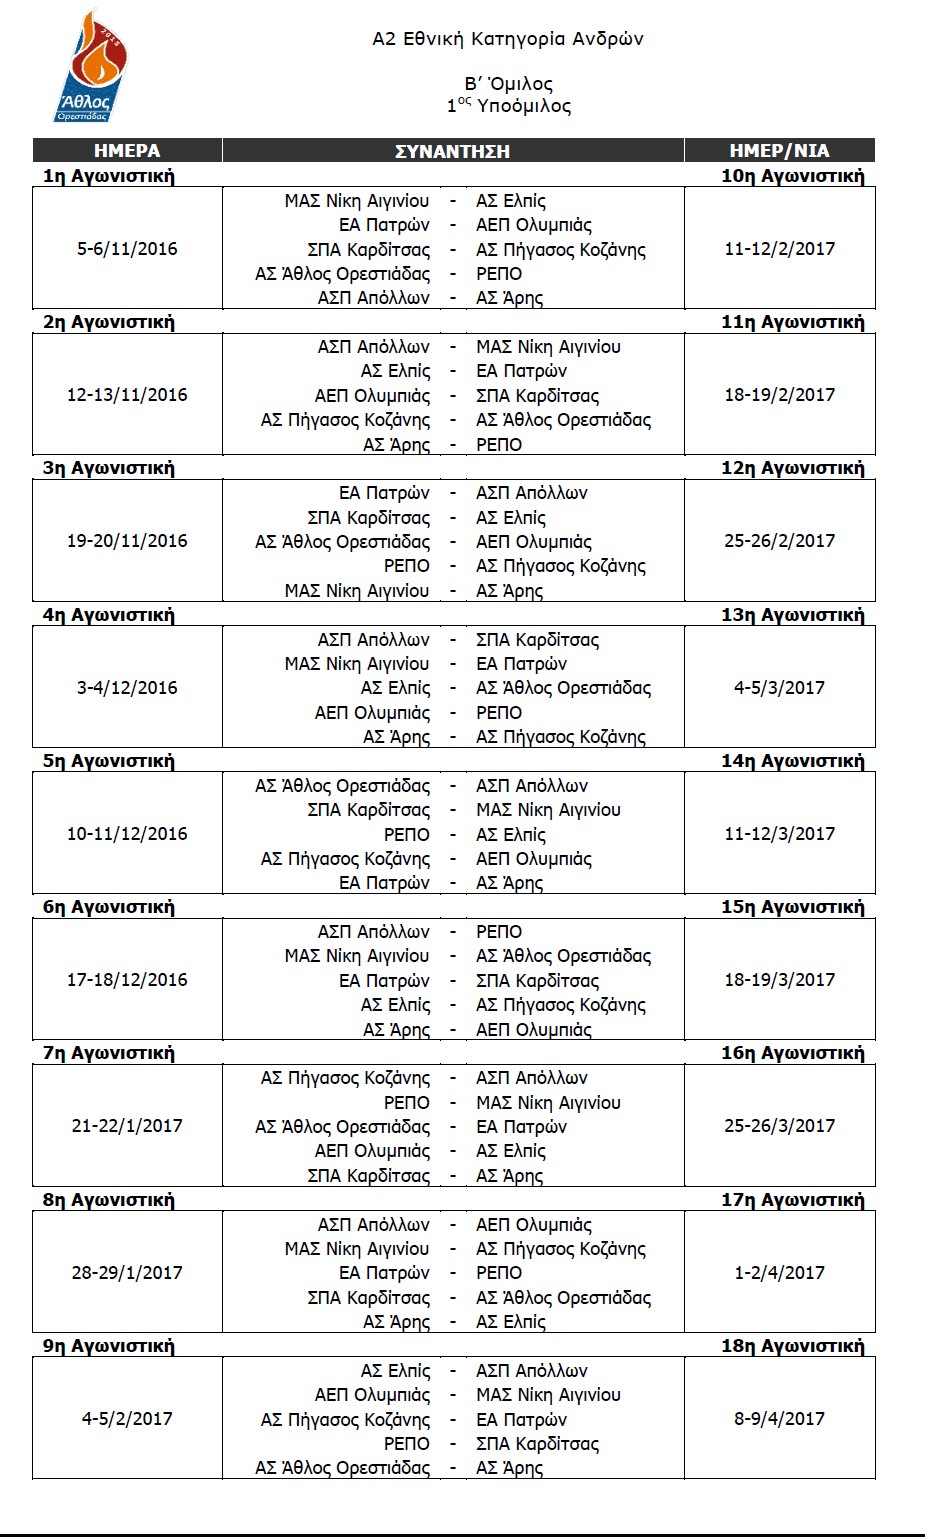 Το πρόγραμμα  των αγώνων του Άθλου Ορεστιάδας για την Α2 εθνική κατηγορία. 